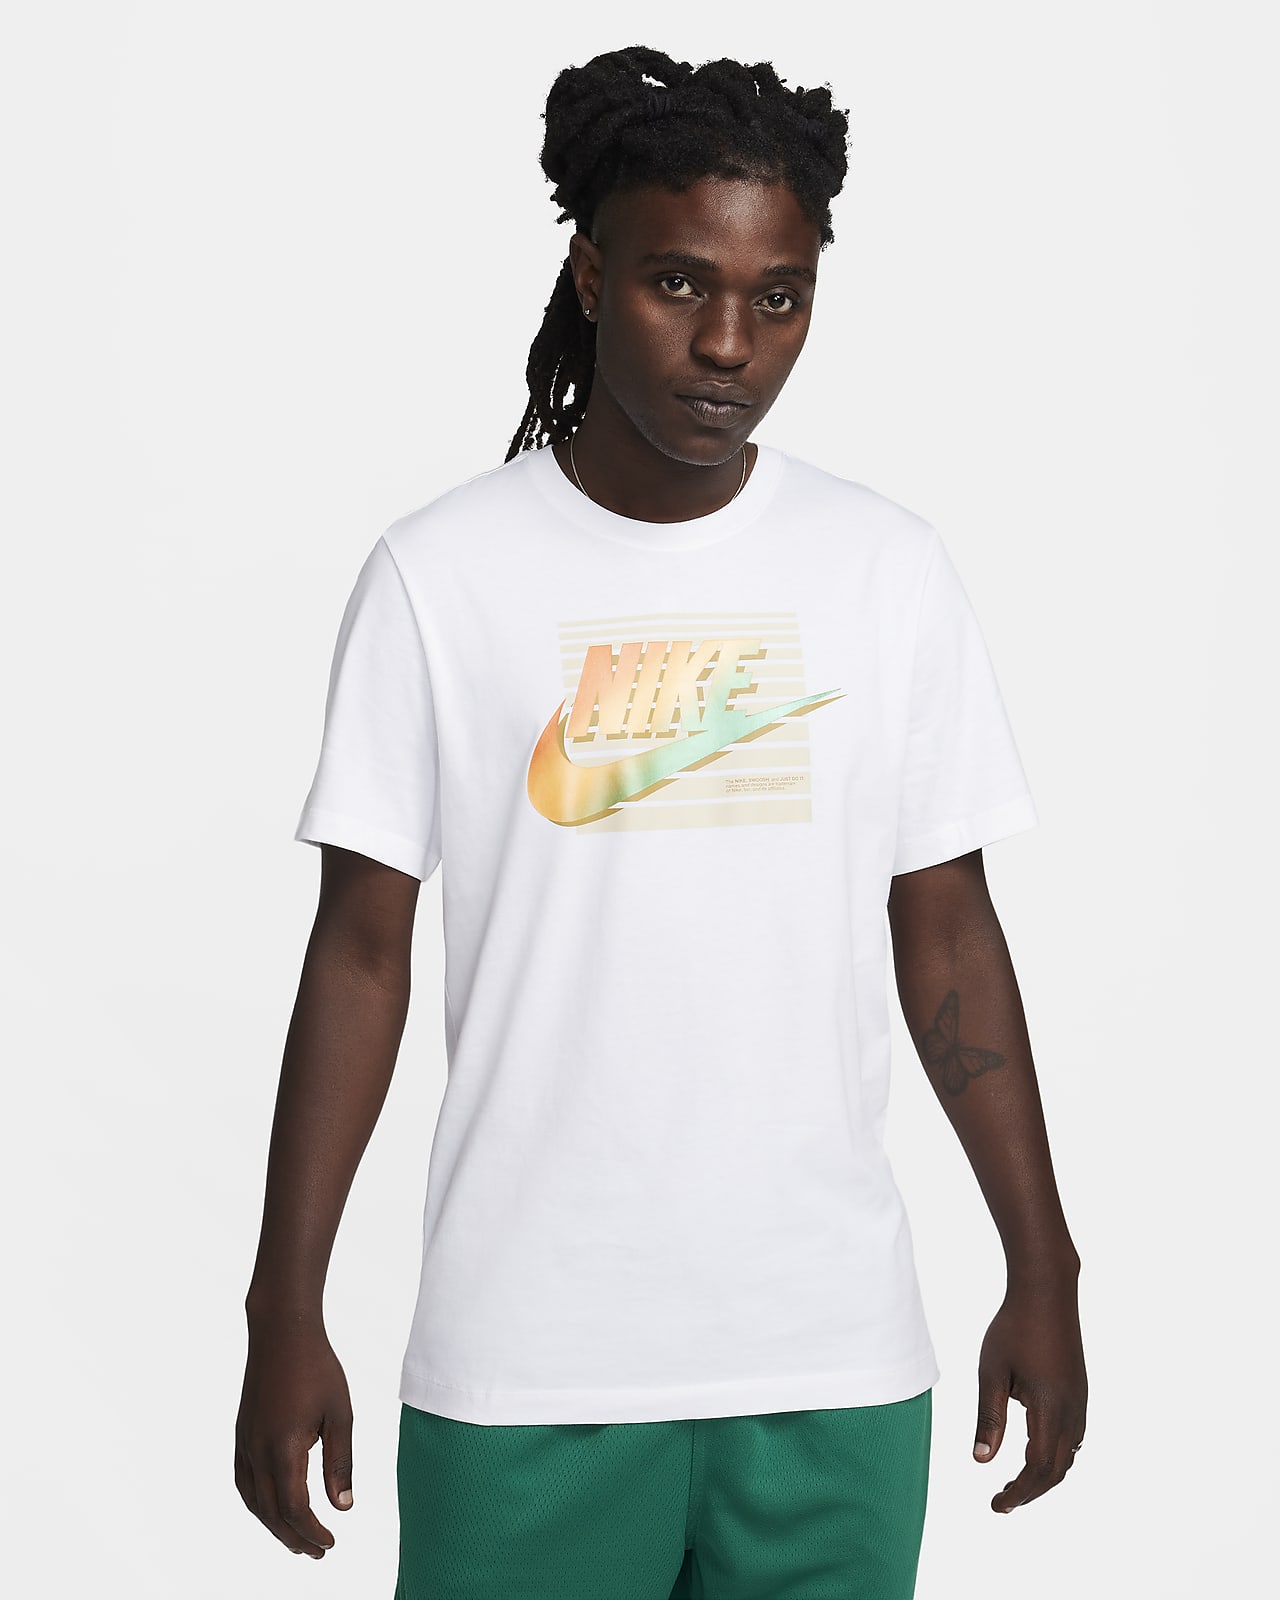 Nike Sportswear Men's T-Shirt. Nike SE